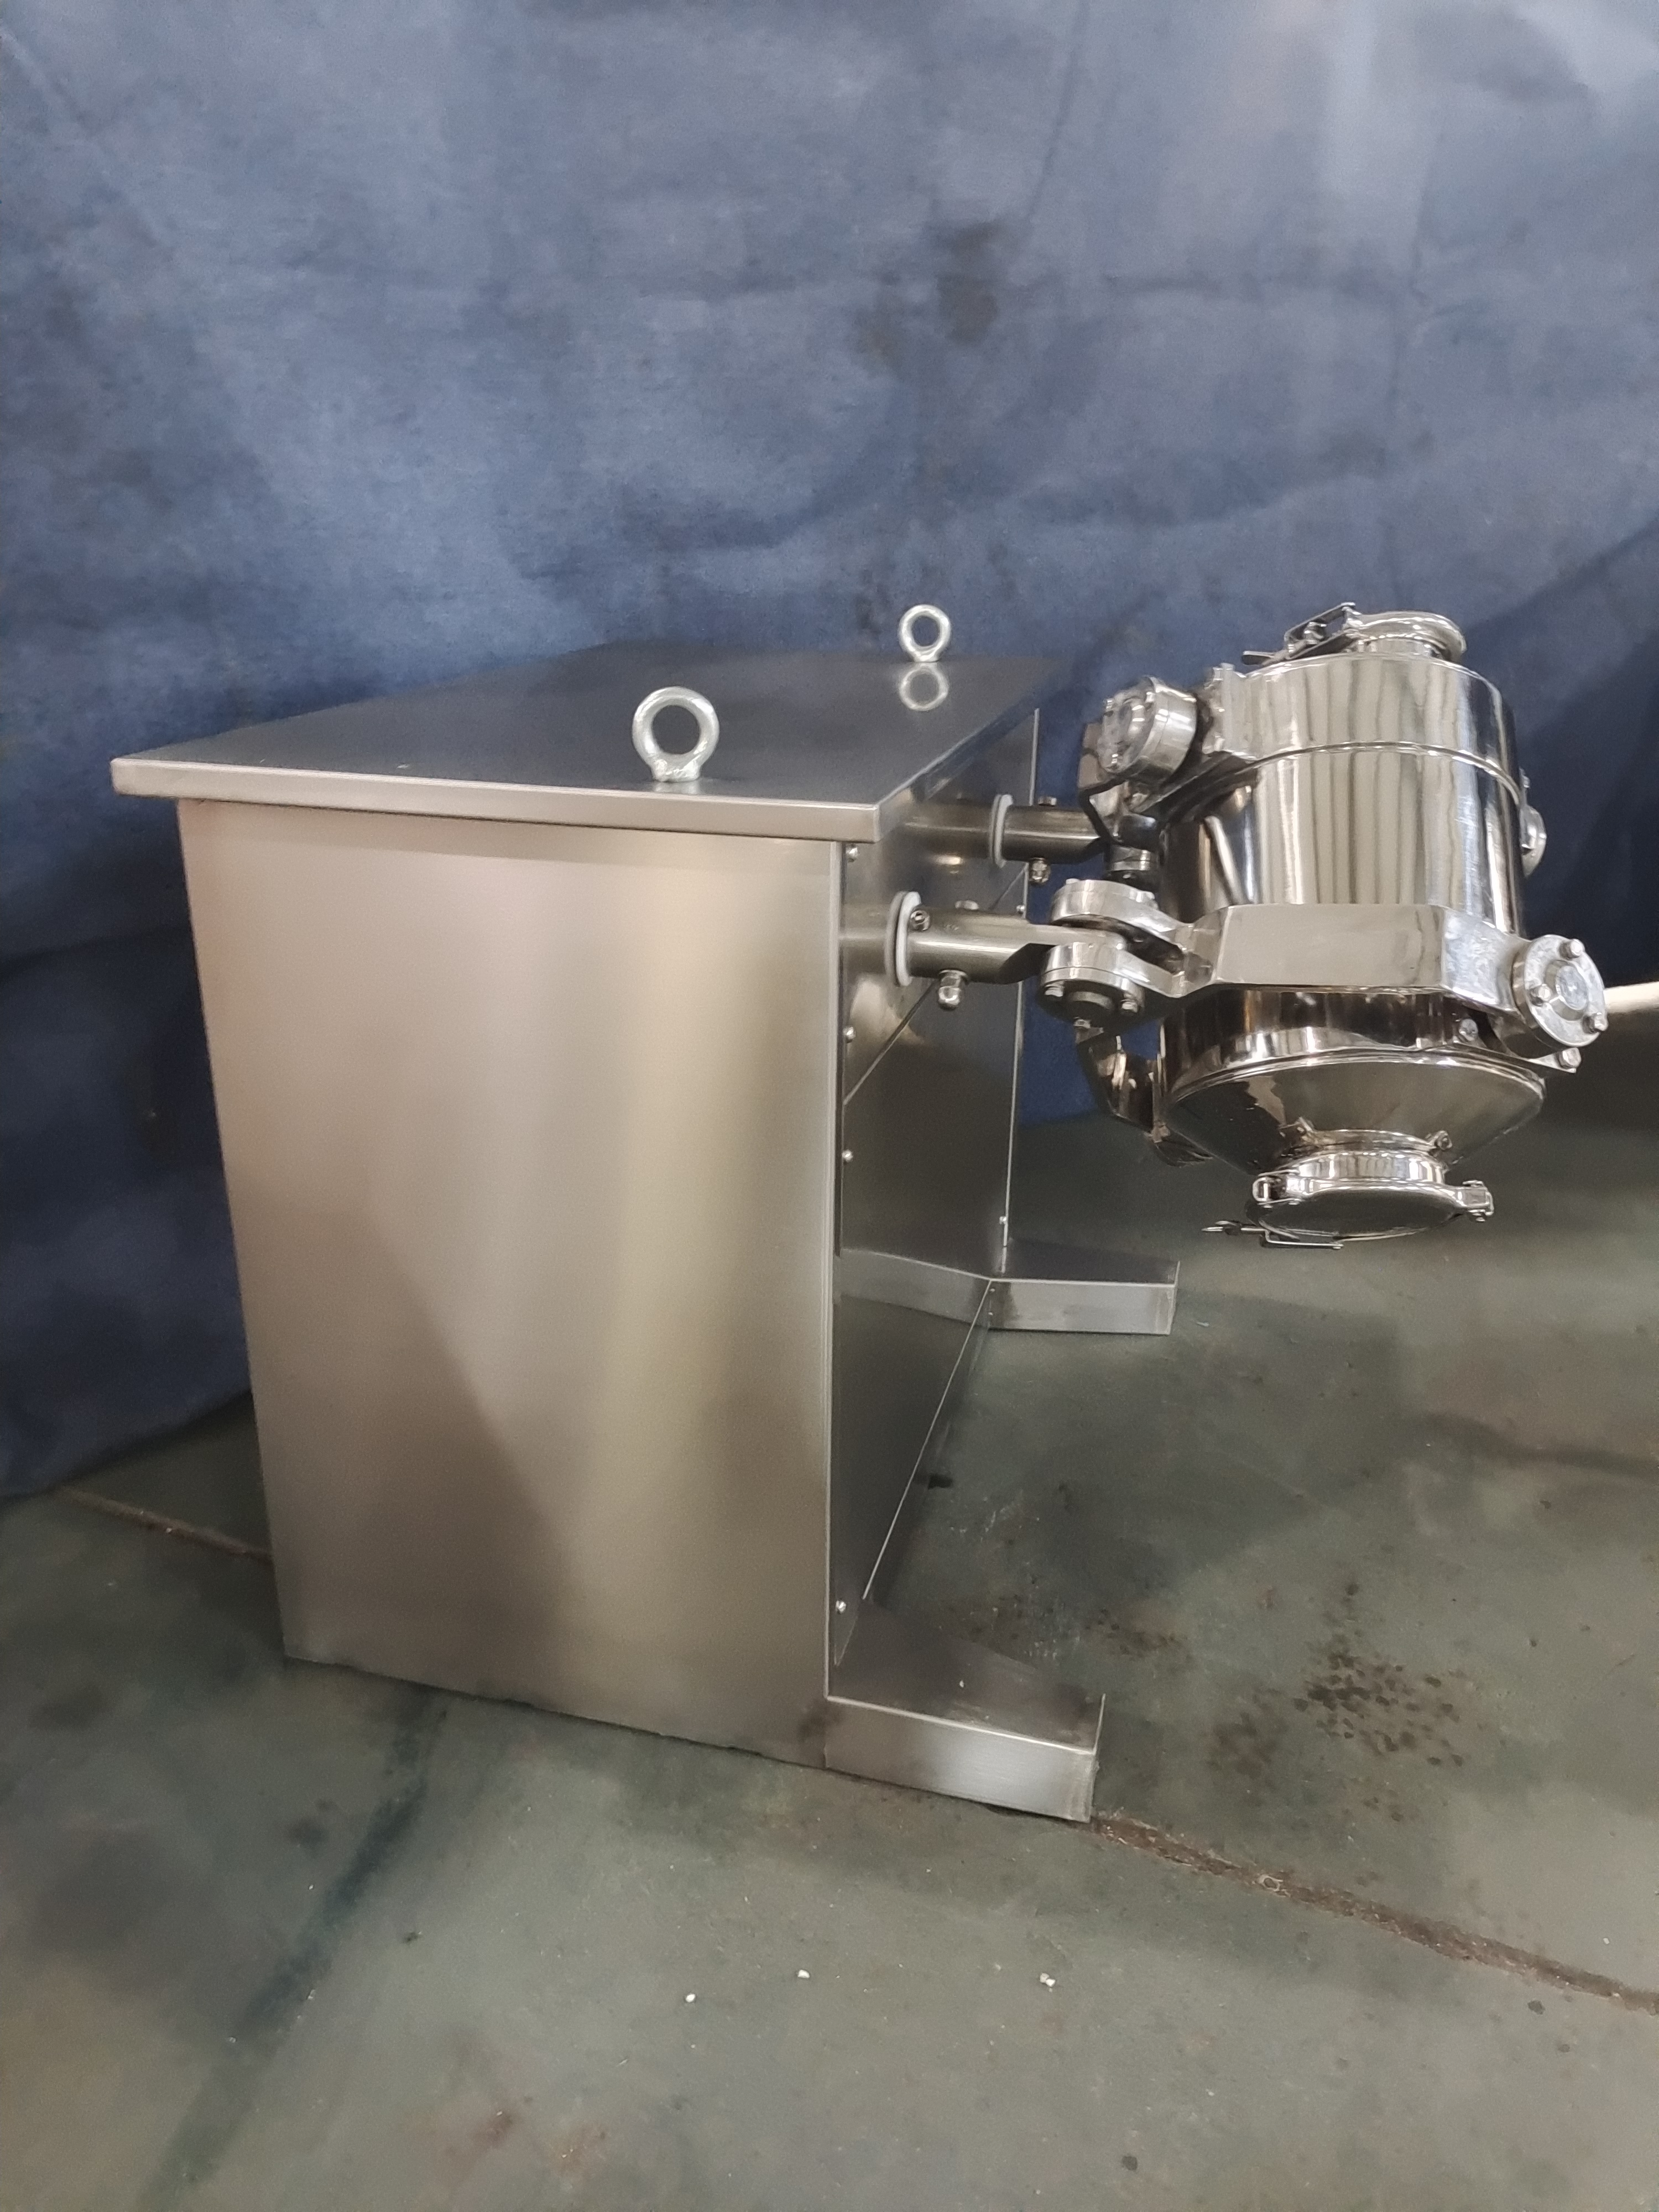 HD-10L Factory Supply Three Dimensions Mixer / Powder Mixer / Food Mixer